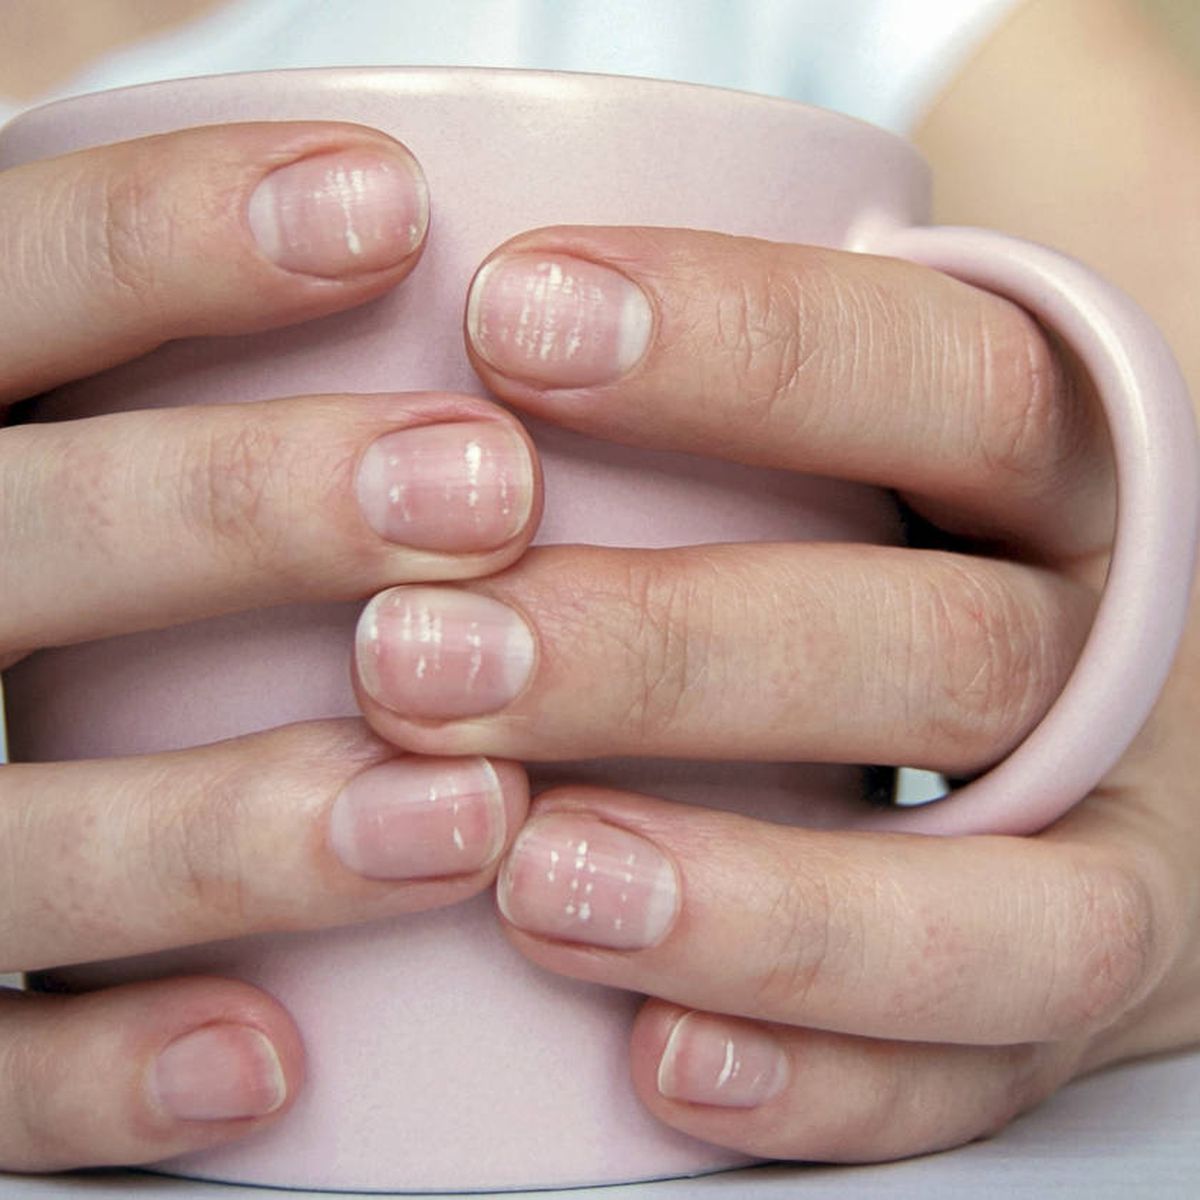 Las uñas dicen mucho de lo que le pasa a tu salud, advierte un dermatólogo